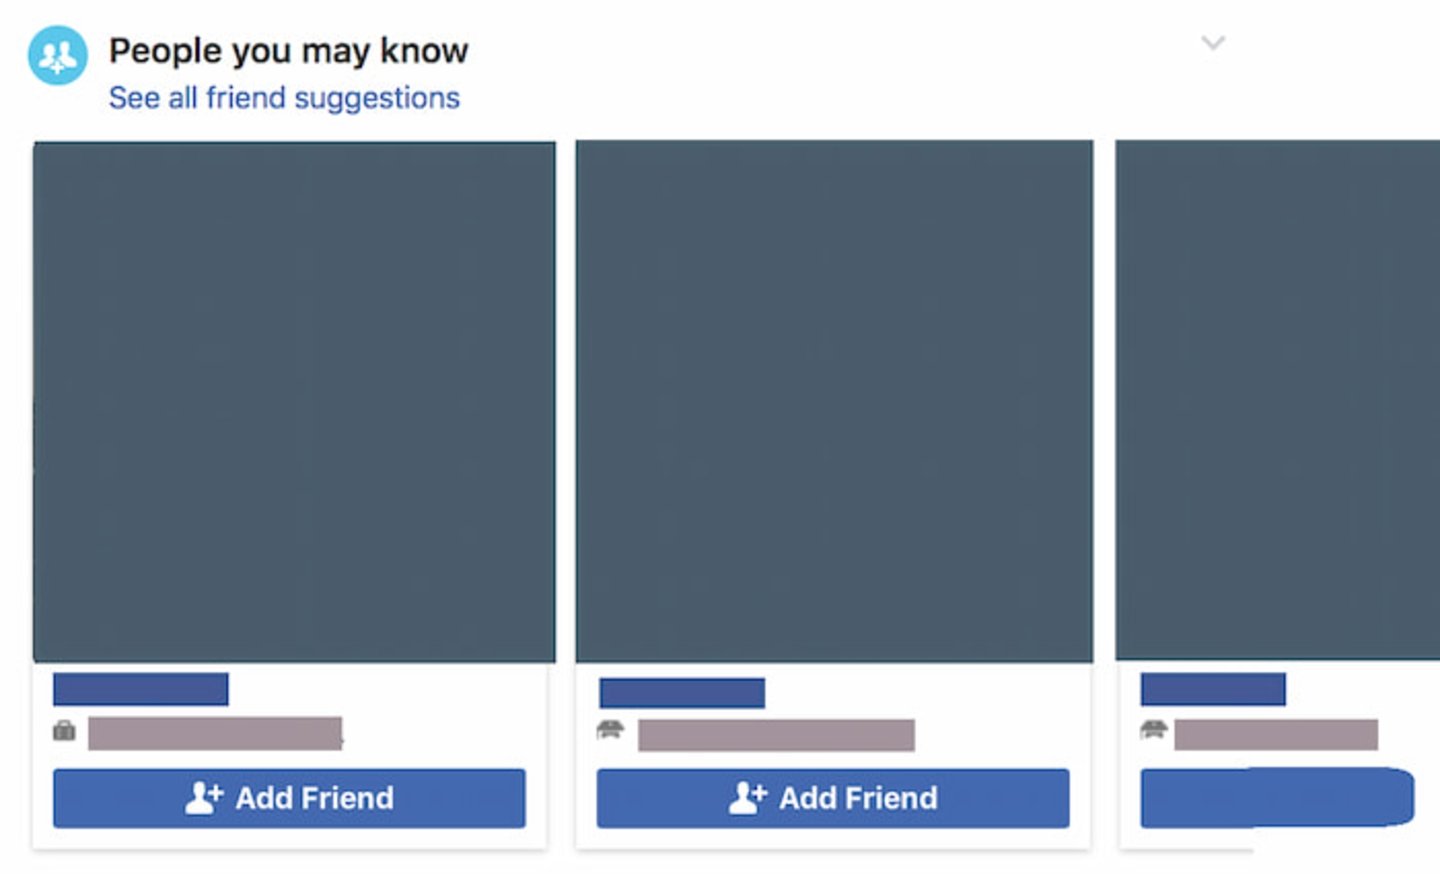 Así funcionan las sugerencias de amistad en Facebook, una característica para conectar a las personas